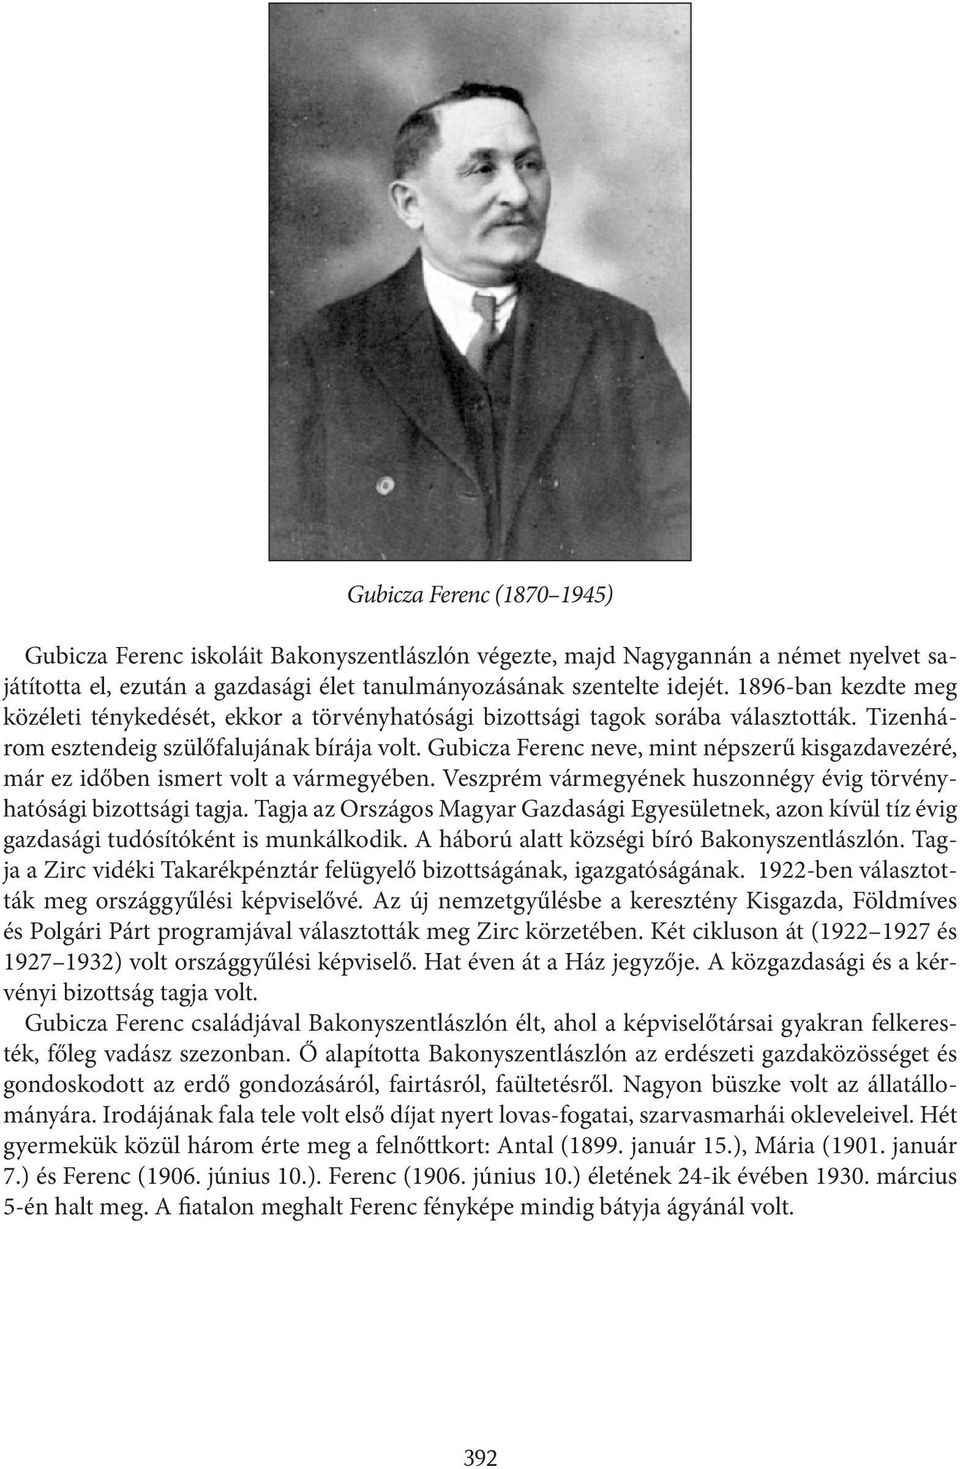 Gubicza Ferenc neve, mint népszerű kisgazdavezéré, már ez időben ismert volt a vármegyében. Veszprém vármegyének huszonnégy évig törvényhatósági bizottsági tagja.